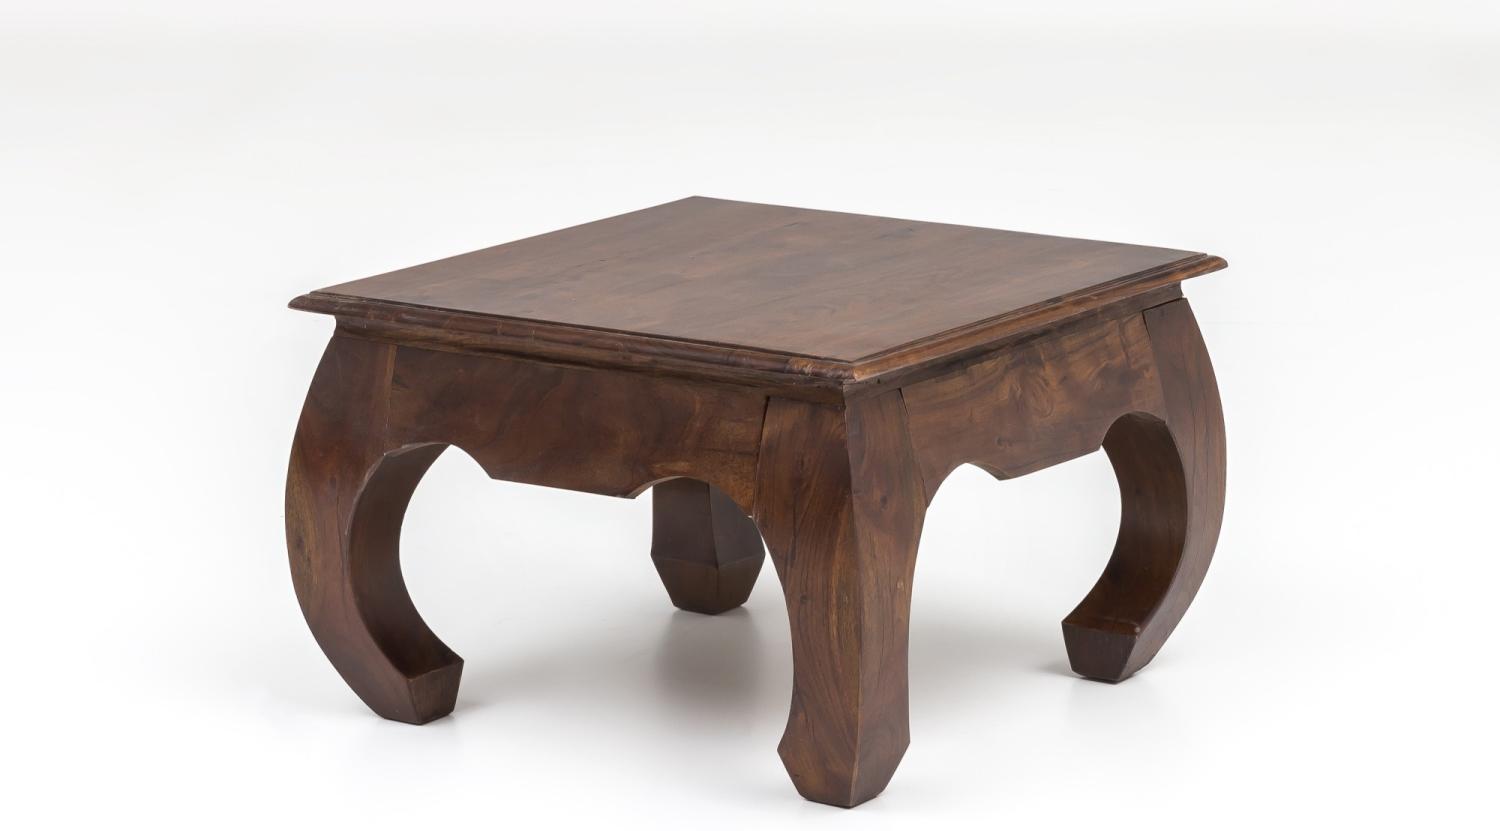 Unikat Couchtisch Massivholz Akazie 60cm Wohnzimmertisch Holz Tisch Handarbeit Bild 1